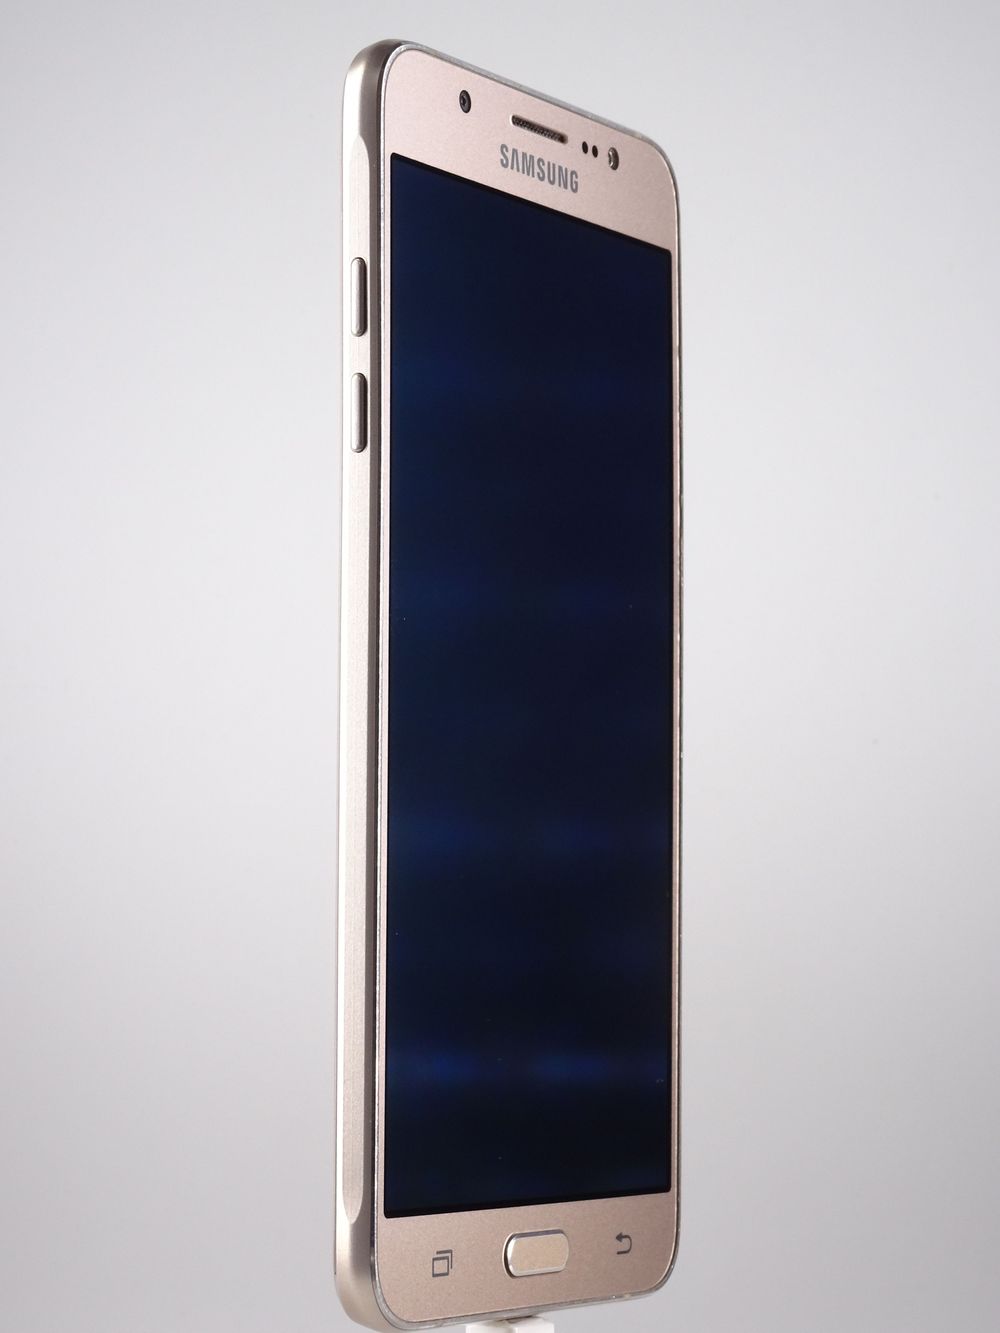 Мобилен телефон Samsung, Galaxy J7 (2016) Dual Sim, 16 GB, Gold,  Като нов